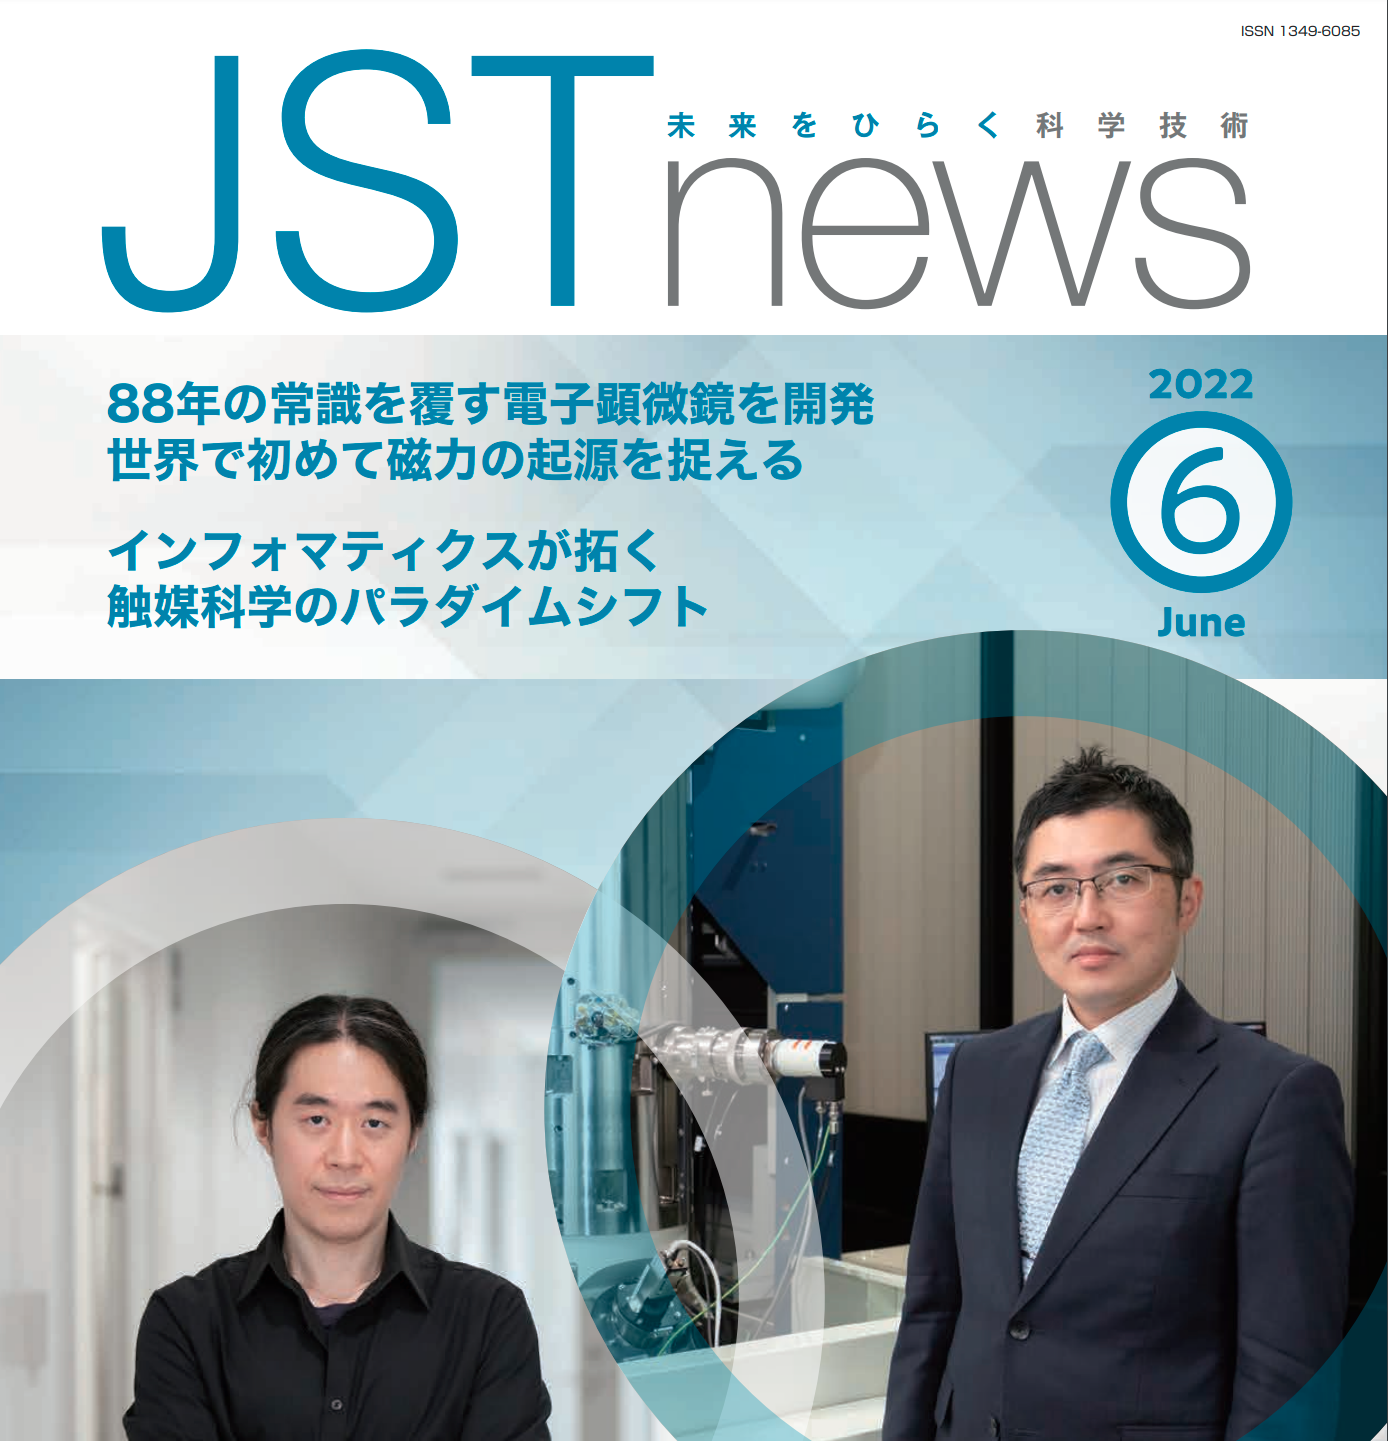 柴田直哉機構長・教授の研究がJST NEWSで取り上げられました。